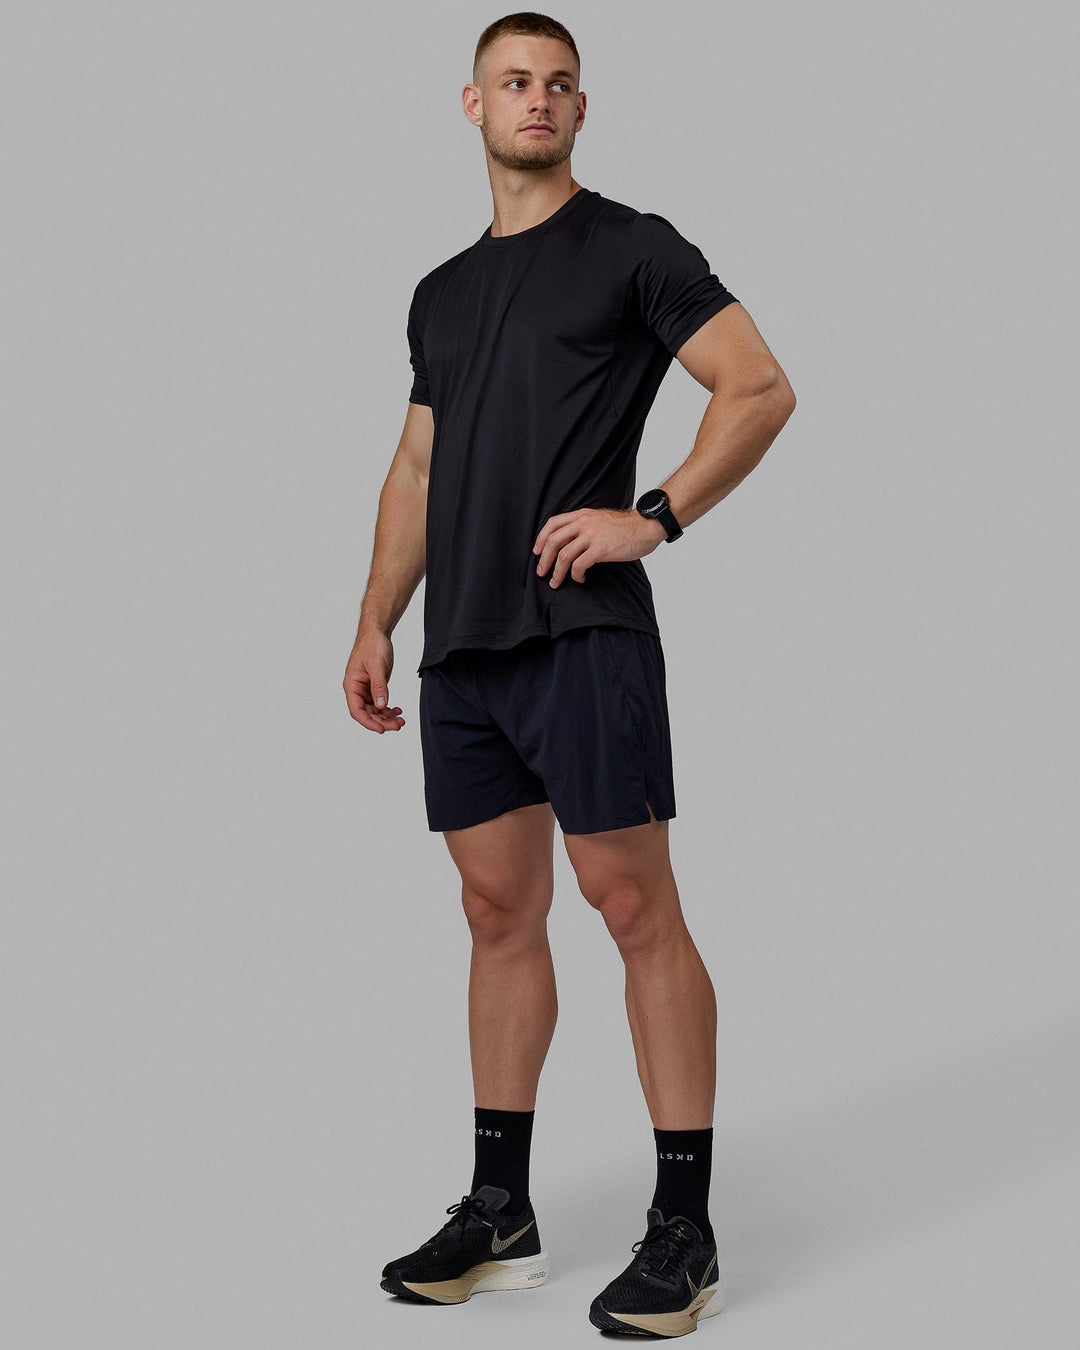 Man wearing Pace Running Tee - Black